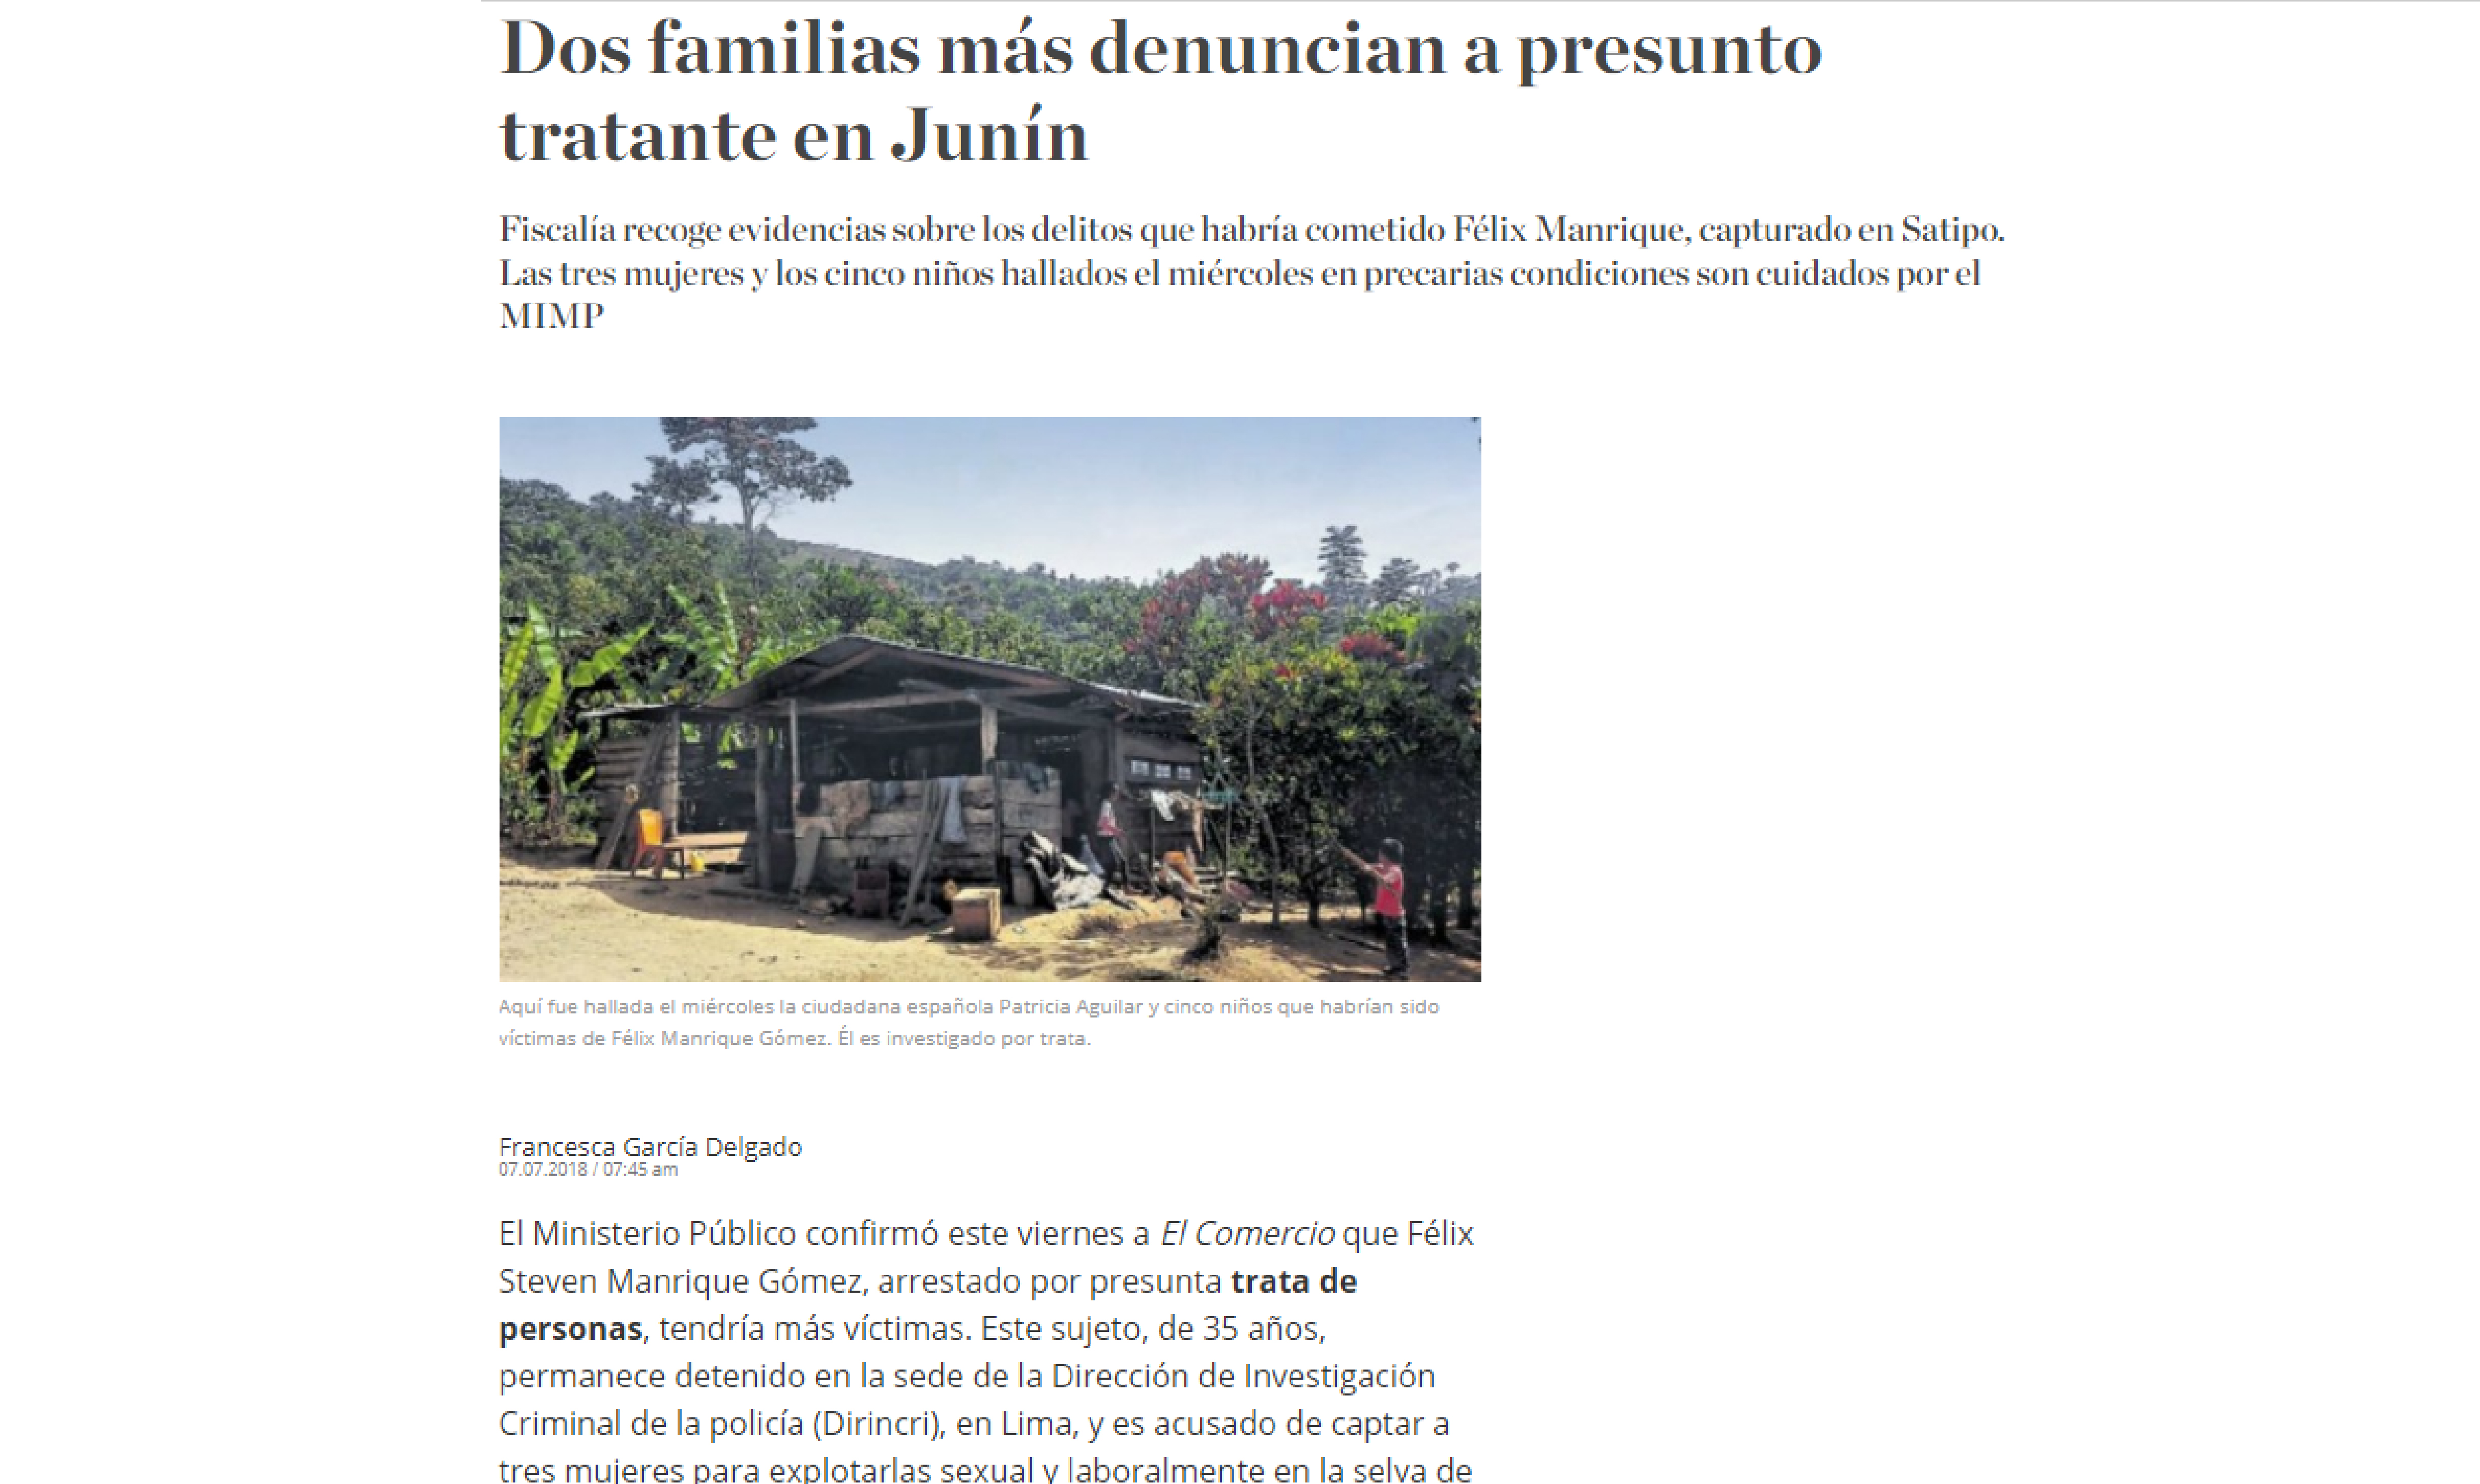 El Comercio: Dos familias más denuncian a presunto tratante en Junín